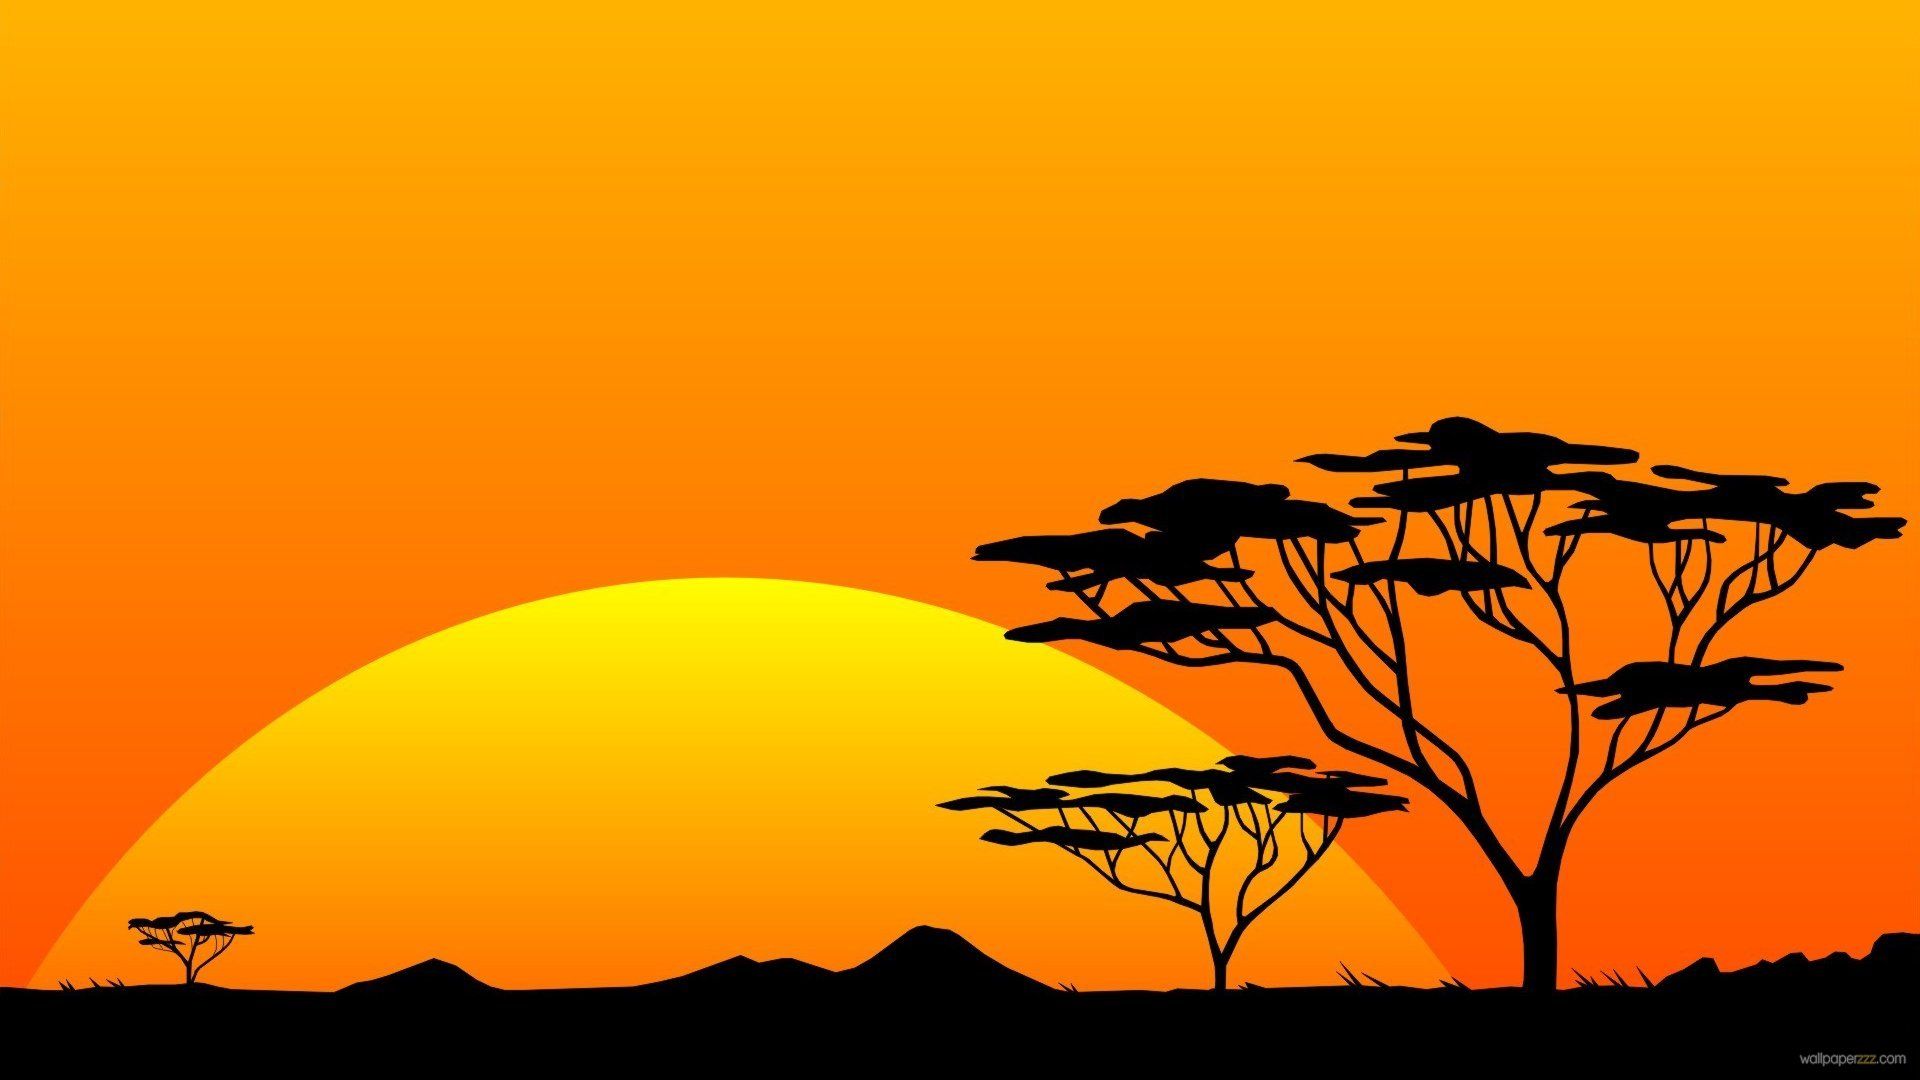 Africa Sunset Wallpaper 1080p - Savannah Sunset , HD Wallpaper & Backgrounds